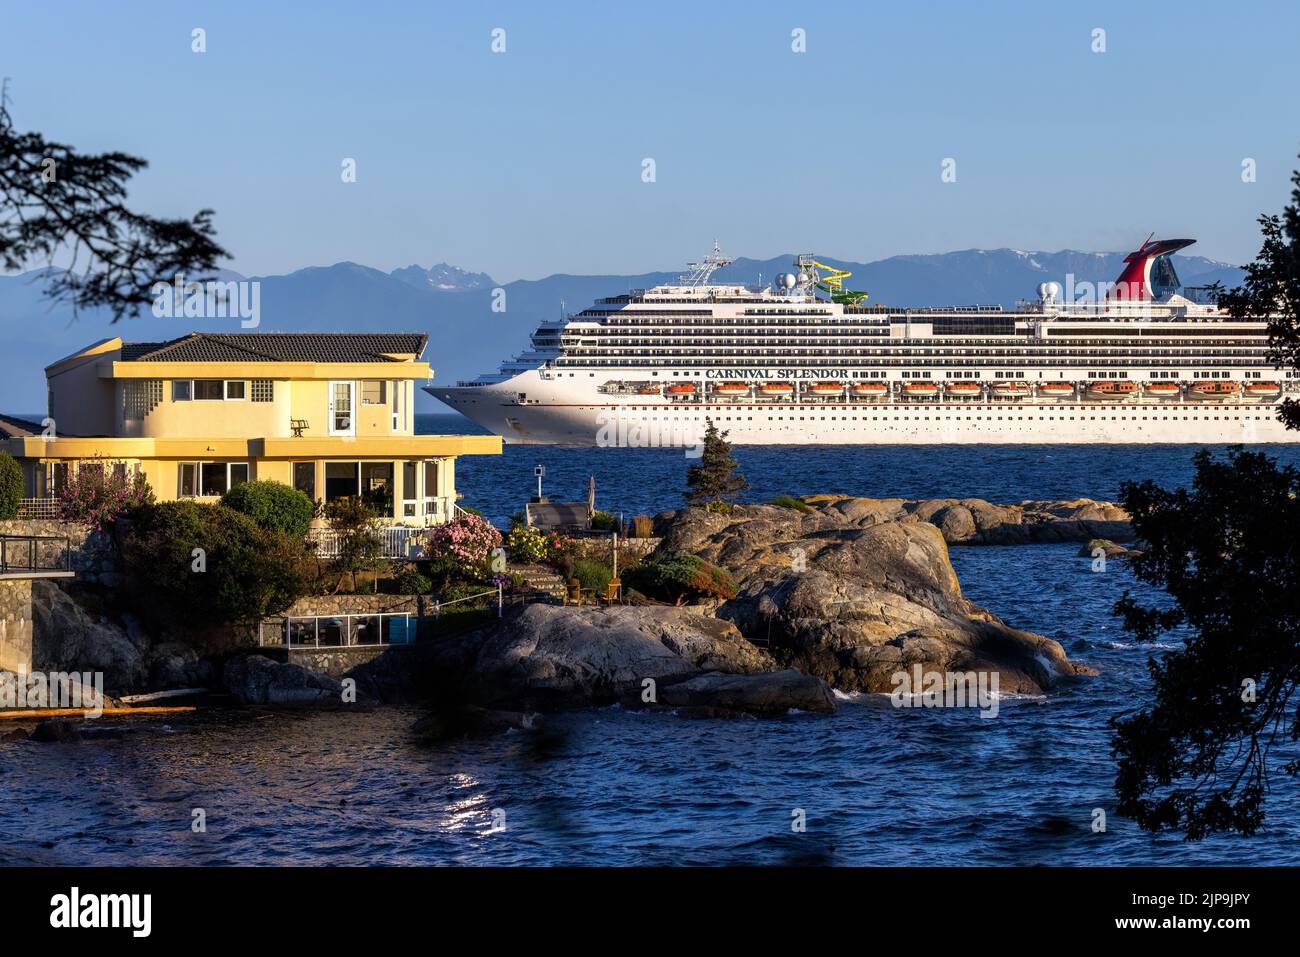 Carnival Splendor cruise ship heading into port in Victoria, Vancouver Island, British Columbia, Canada Stock Photo